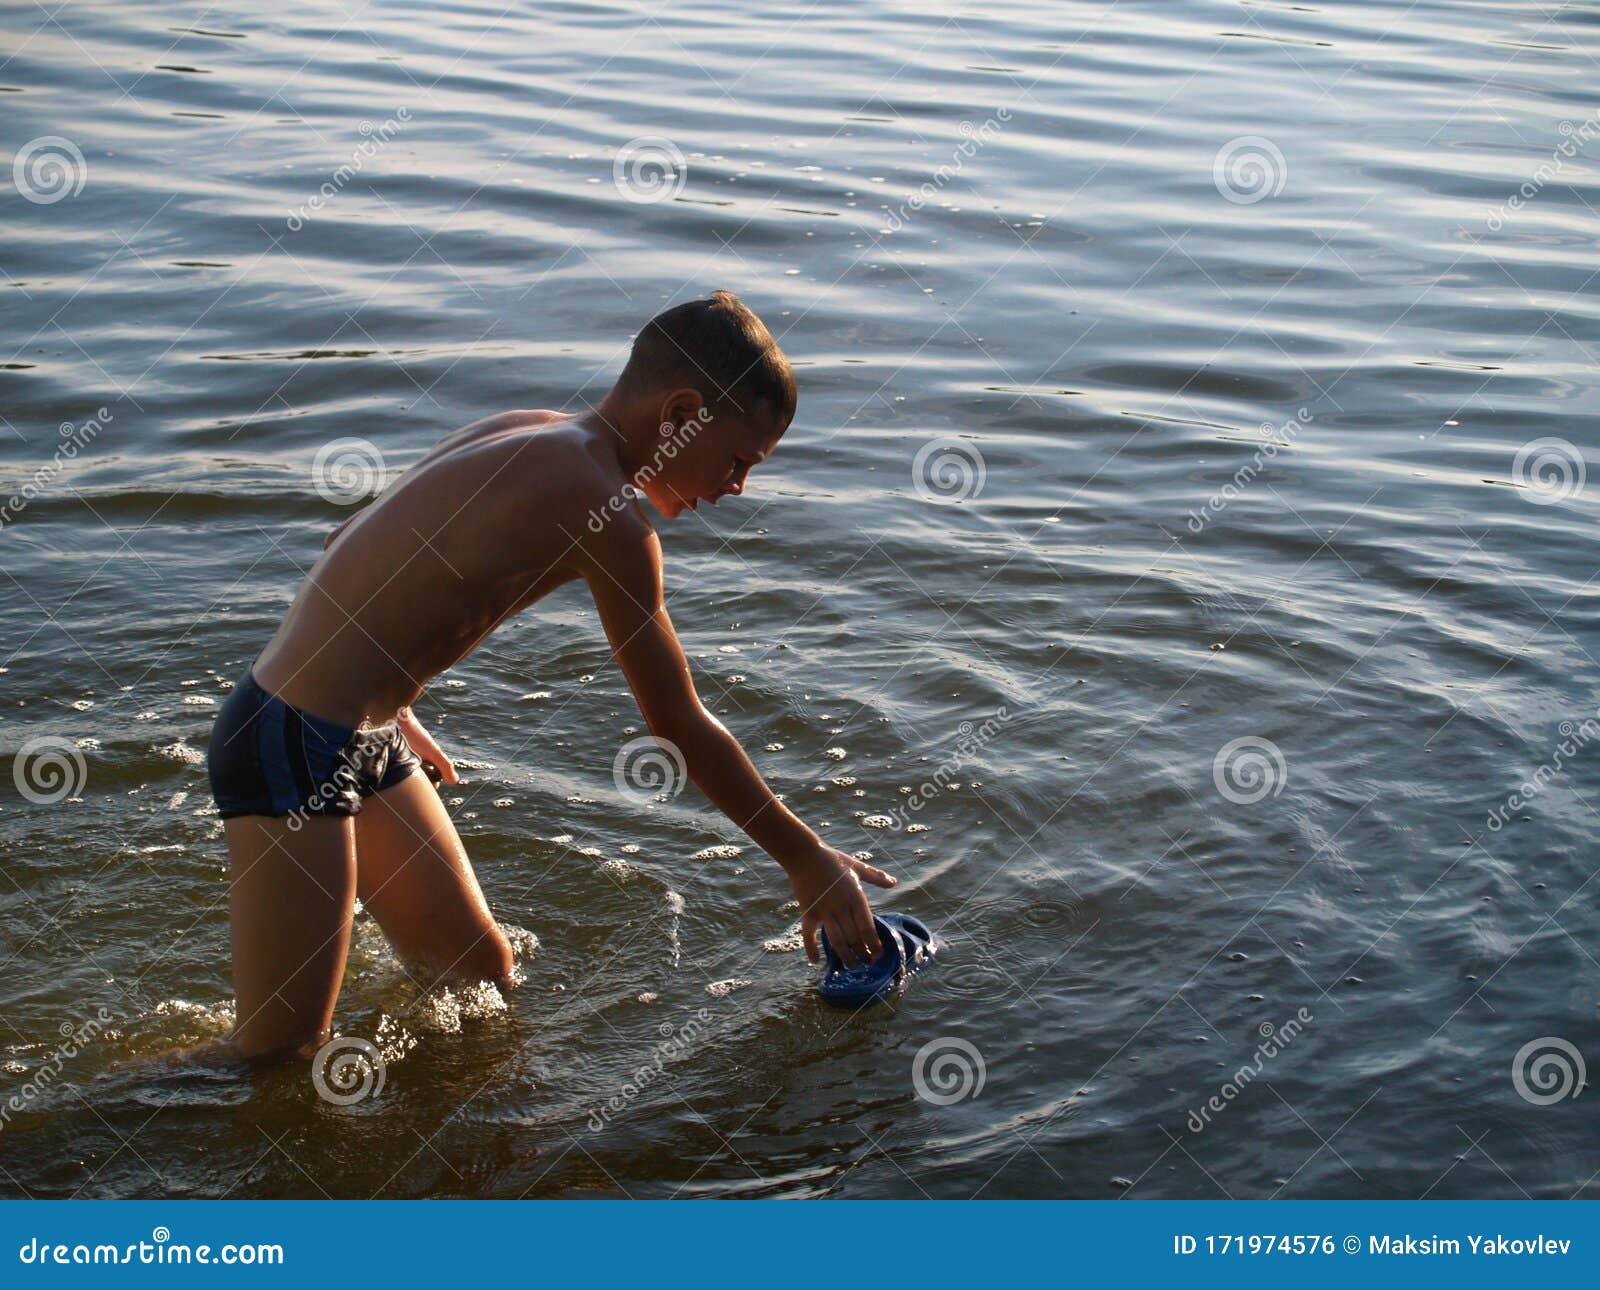 Купаемся в плавках. Мальчишки на речке. Мальчик на реке. Мальчики купаются в реке.